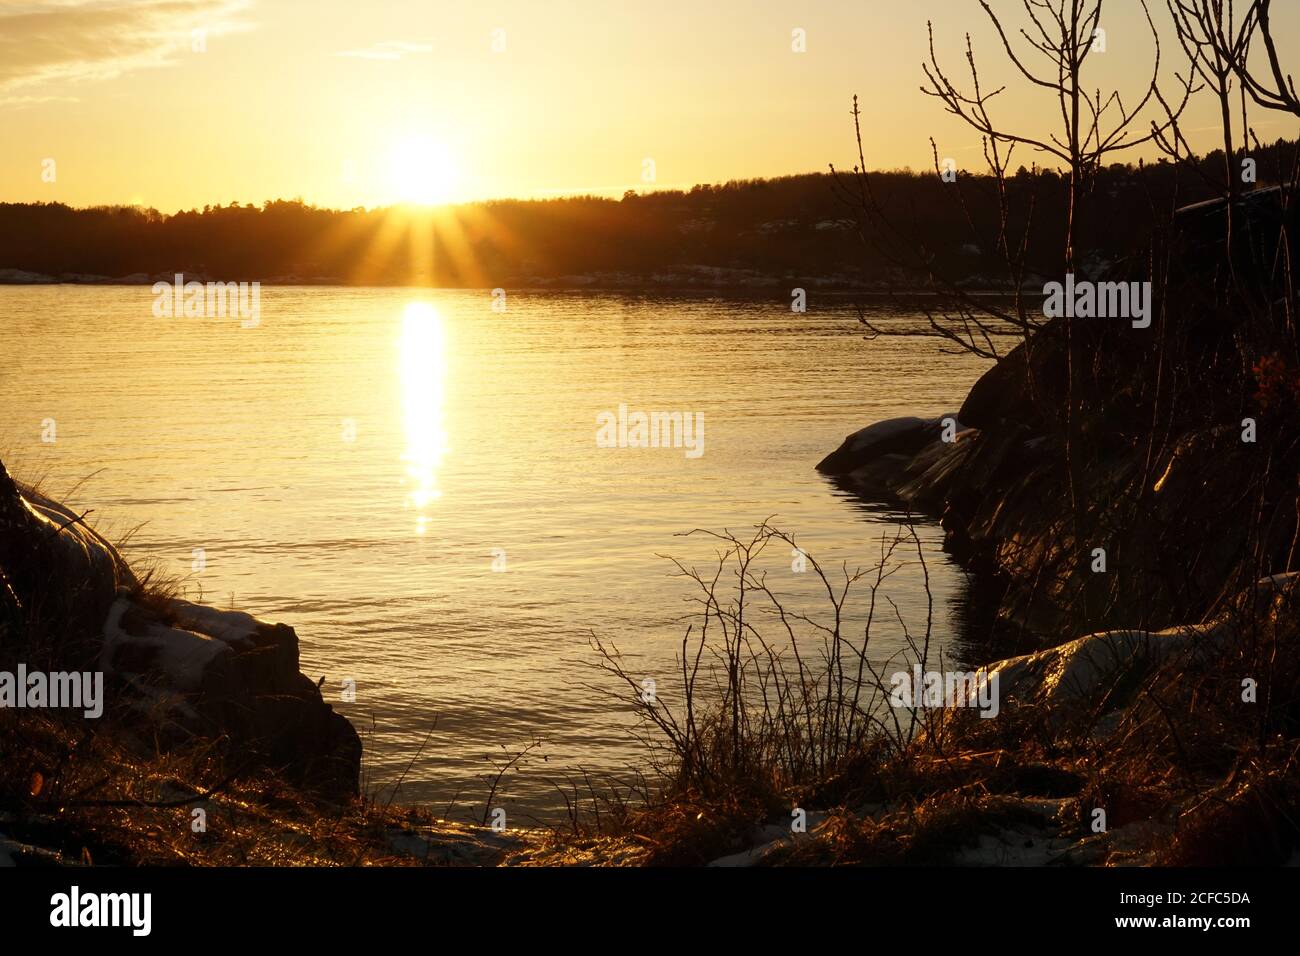 Bois tranquille avec rochers au lac en rayons du soleil Banque D'Images